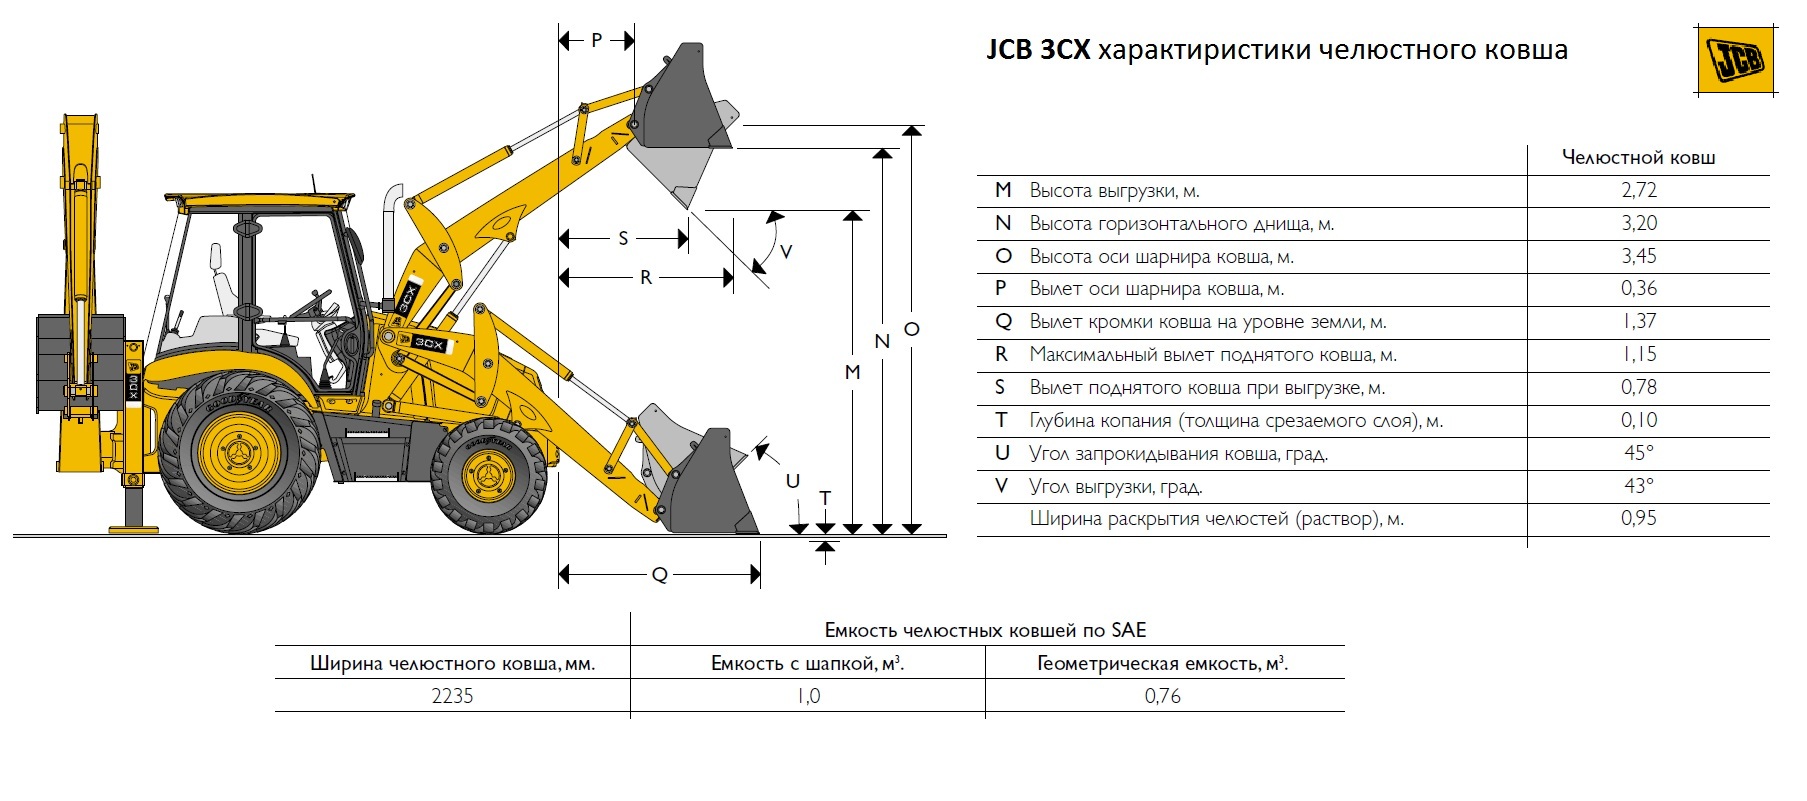 Kuormaus- ja kaivinkoneet JCB 3CX